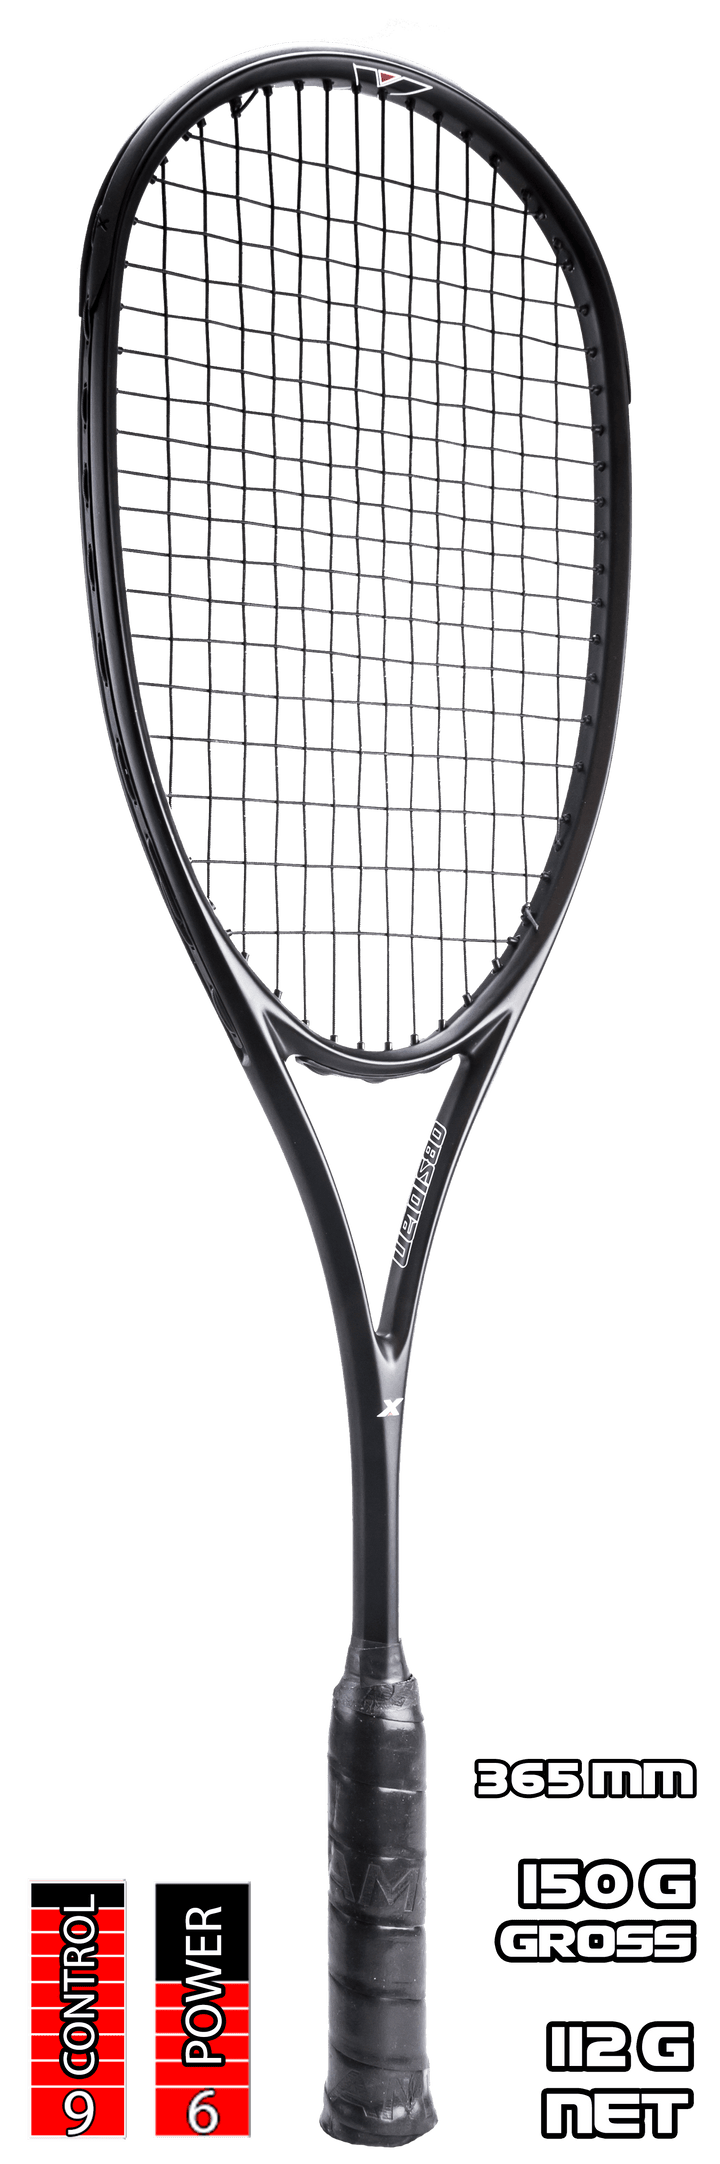 Xamsa Obsidian Squash Racquet Strung - XamsaSquash